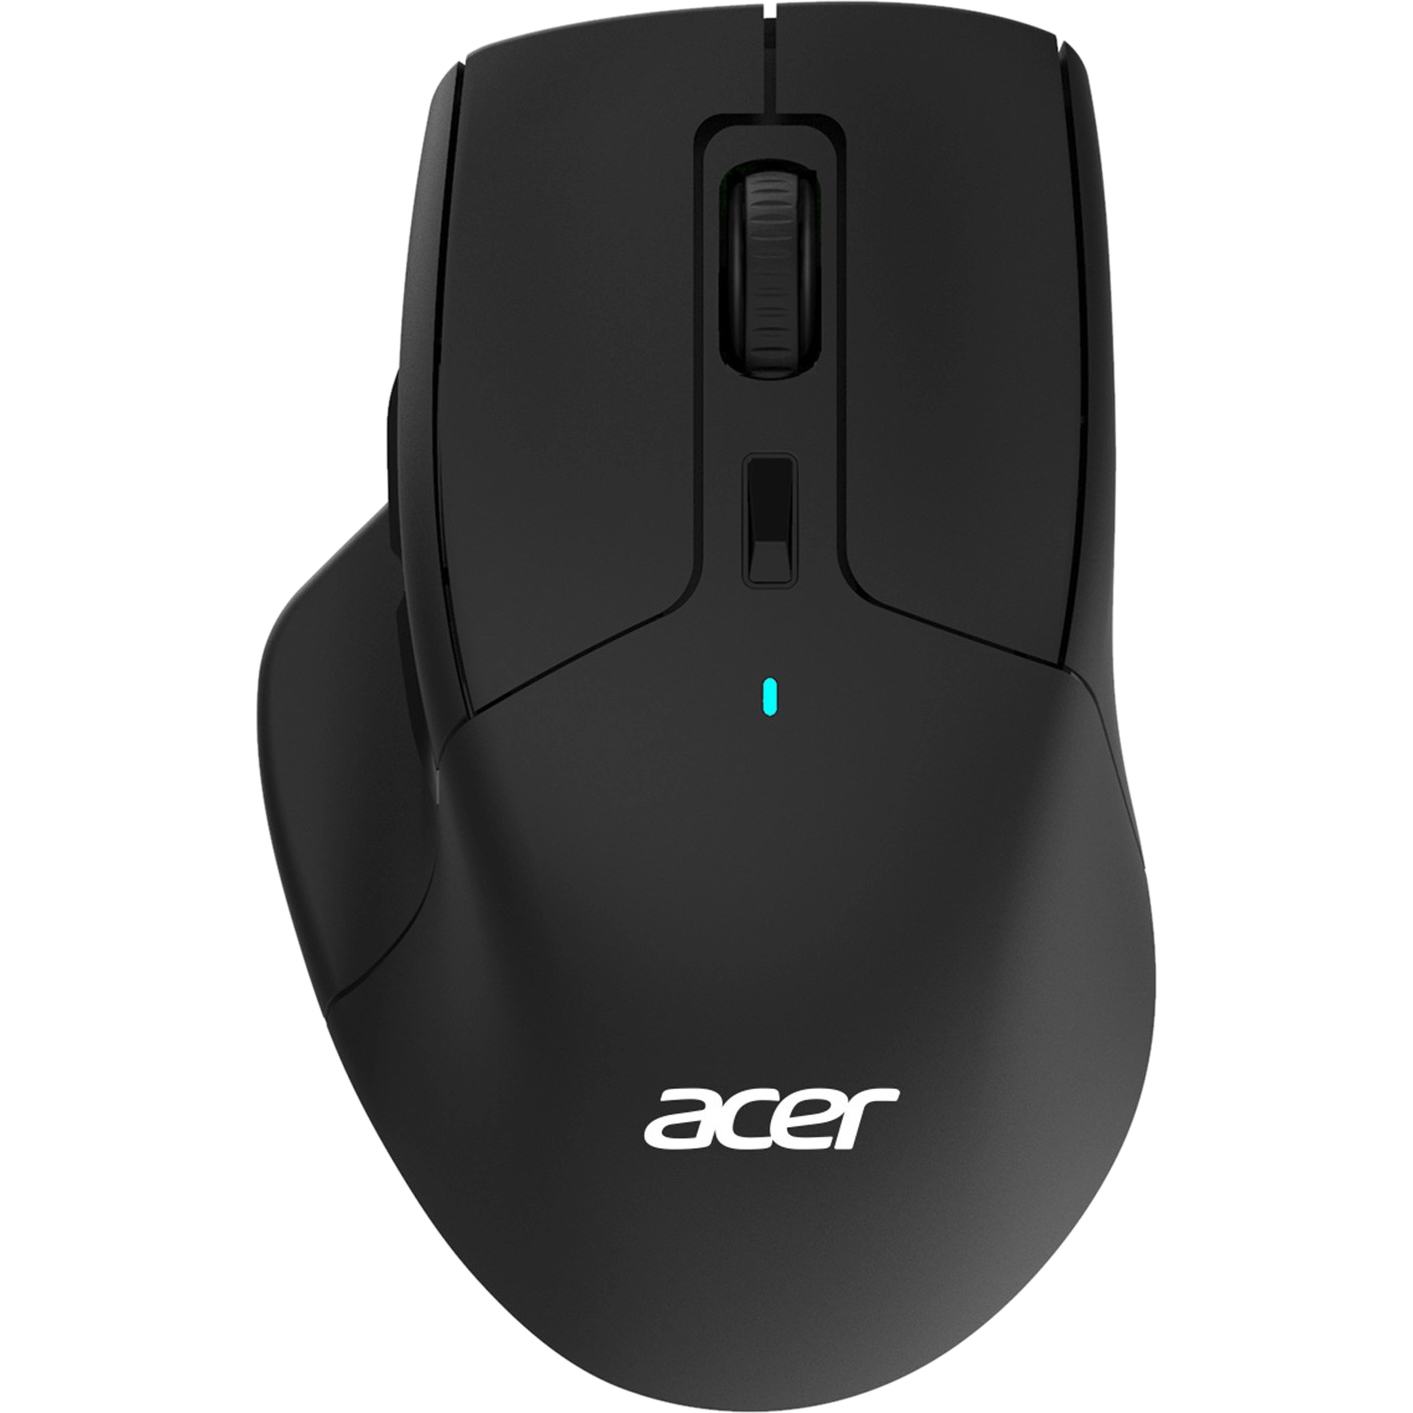 Компьютерная мышь Acer OMR170 черный цена и фото